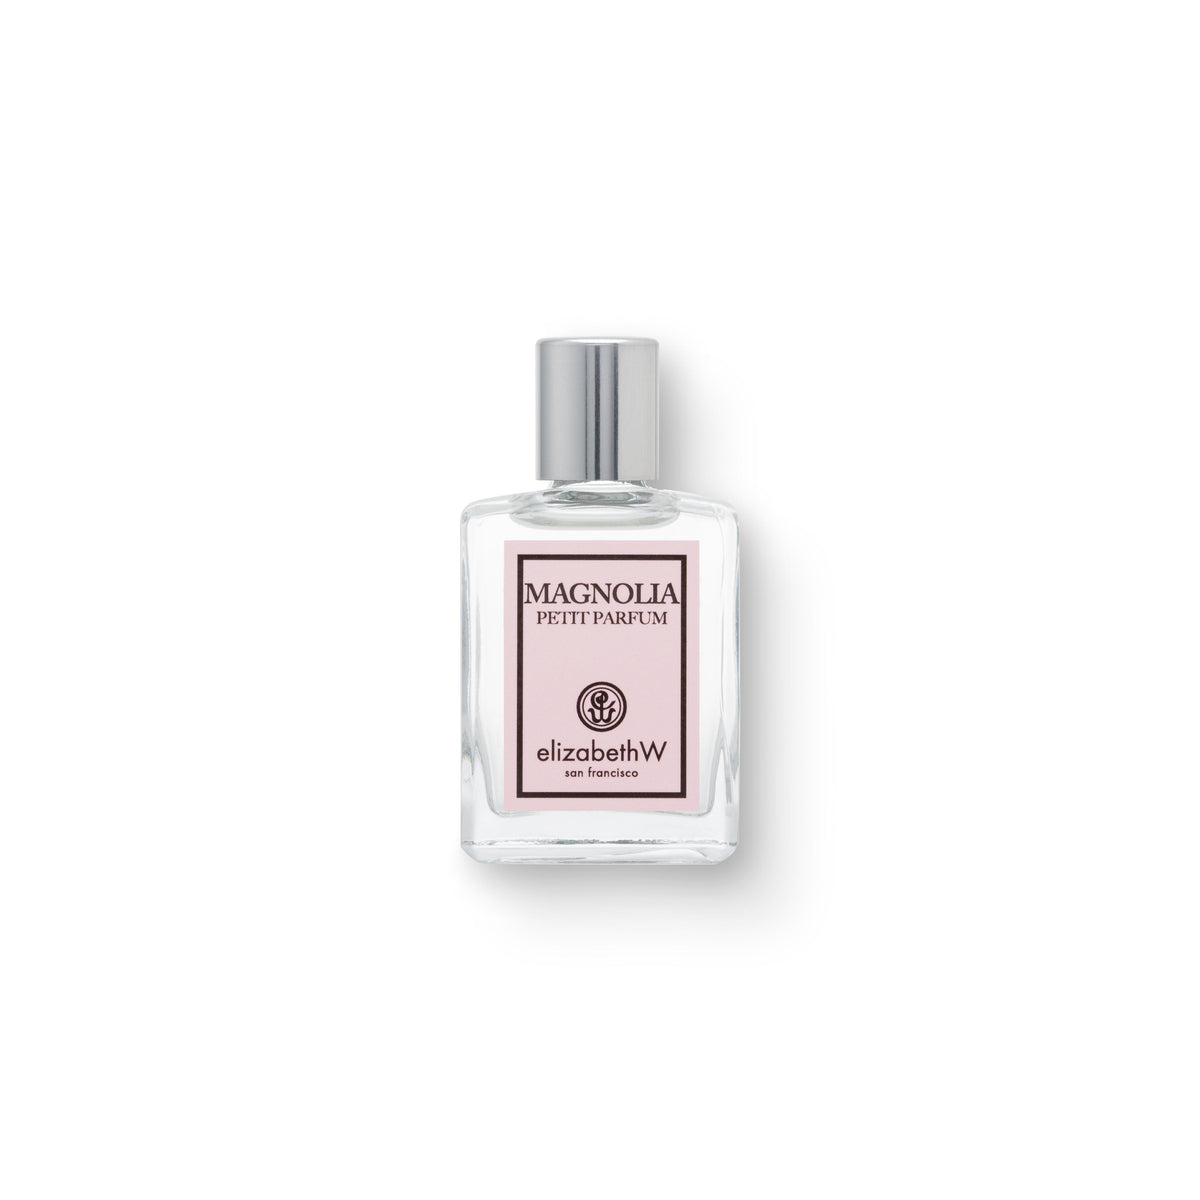 Magnolia Eau de Parfum-Petit